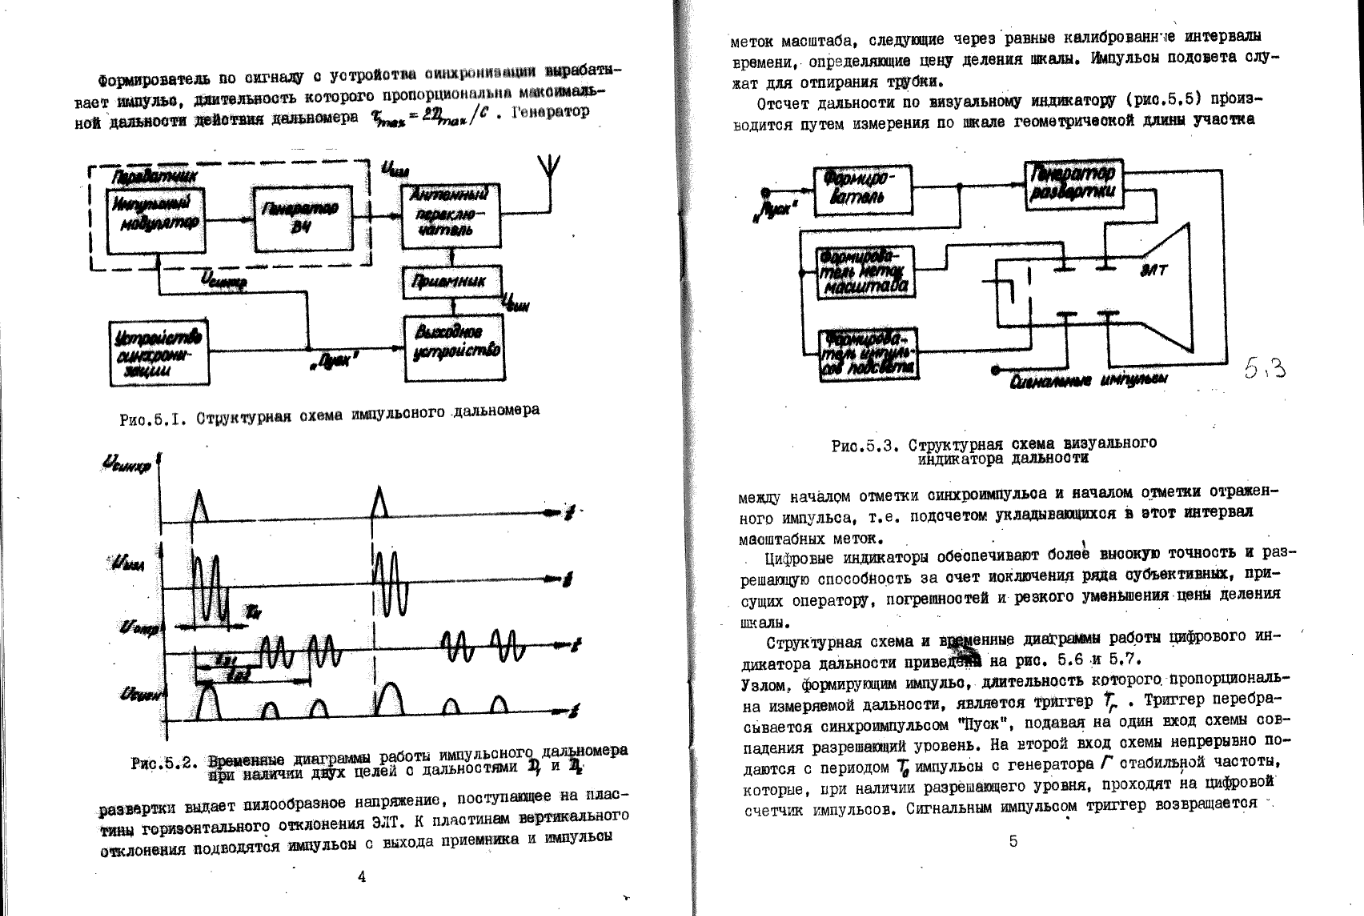 Радиолокация и радиопротиводействие. Описание лабораторных работ по курсу 'Радиотехнические системы'. 1982